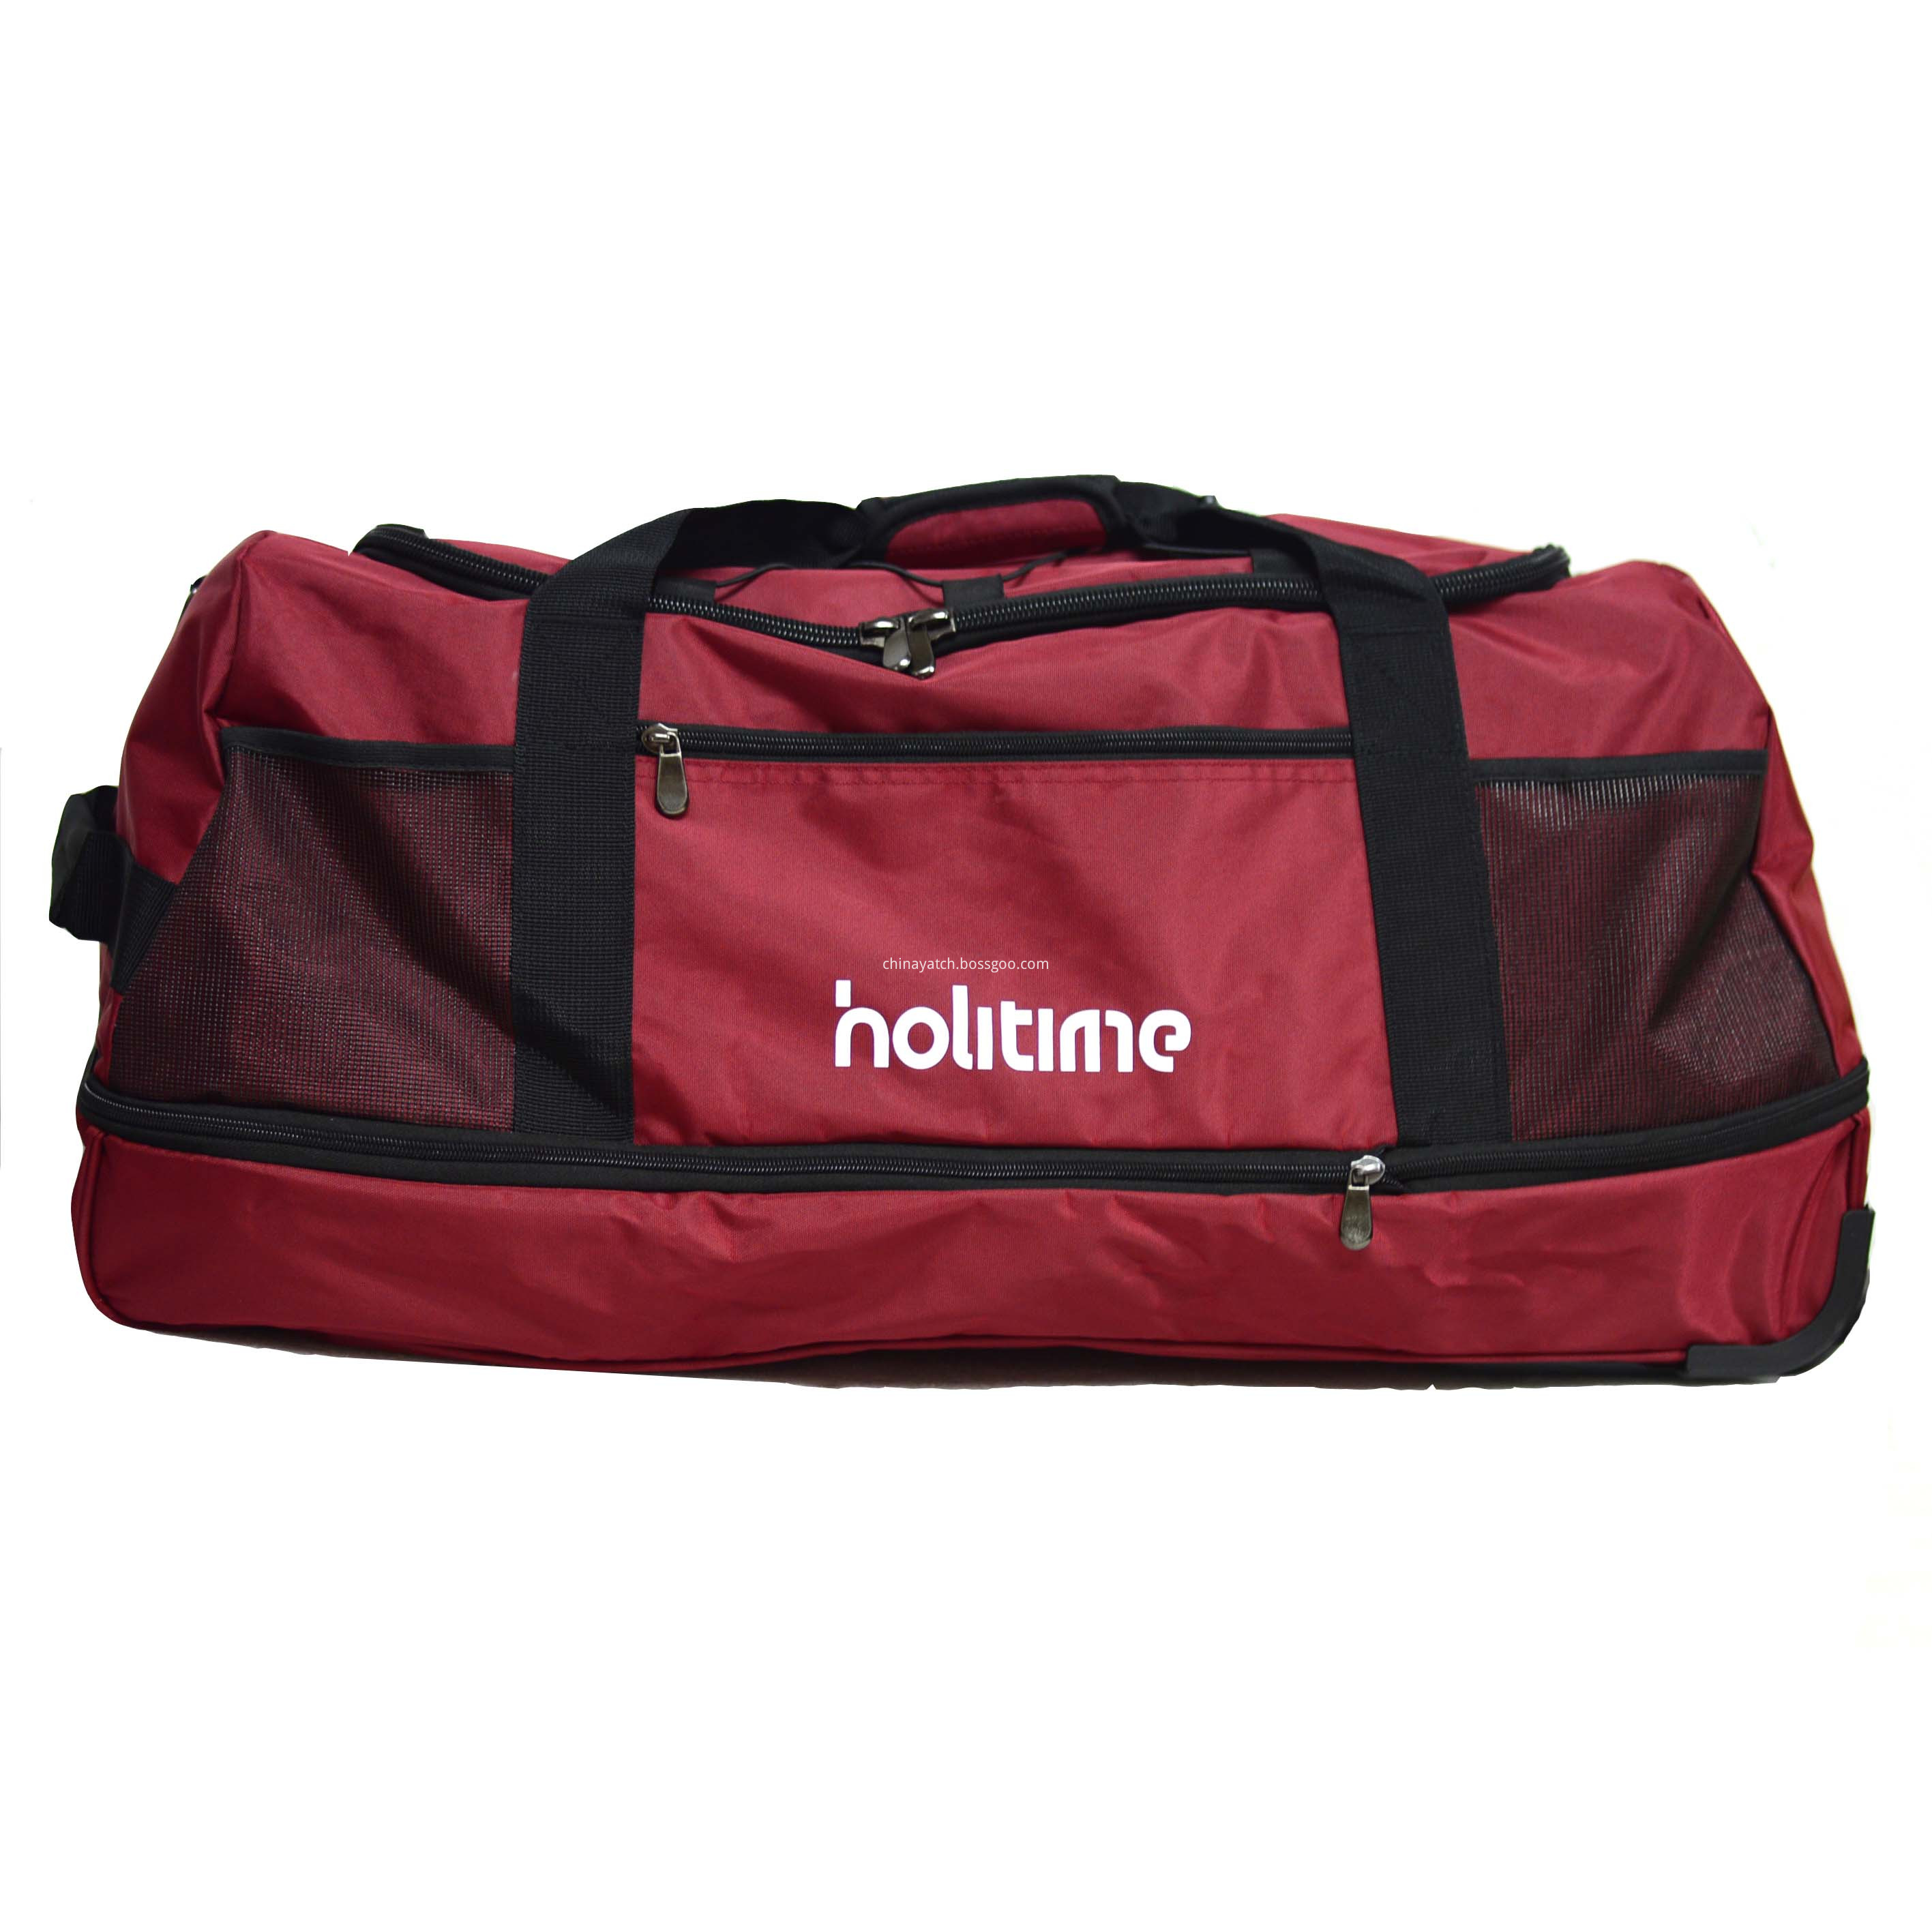 Holitime Foldable Duffle Bag 3 Wheels